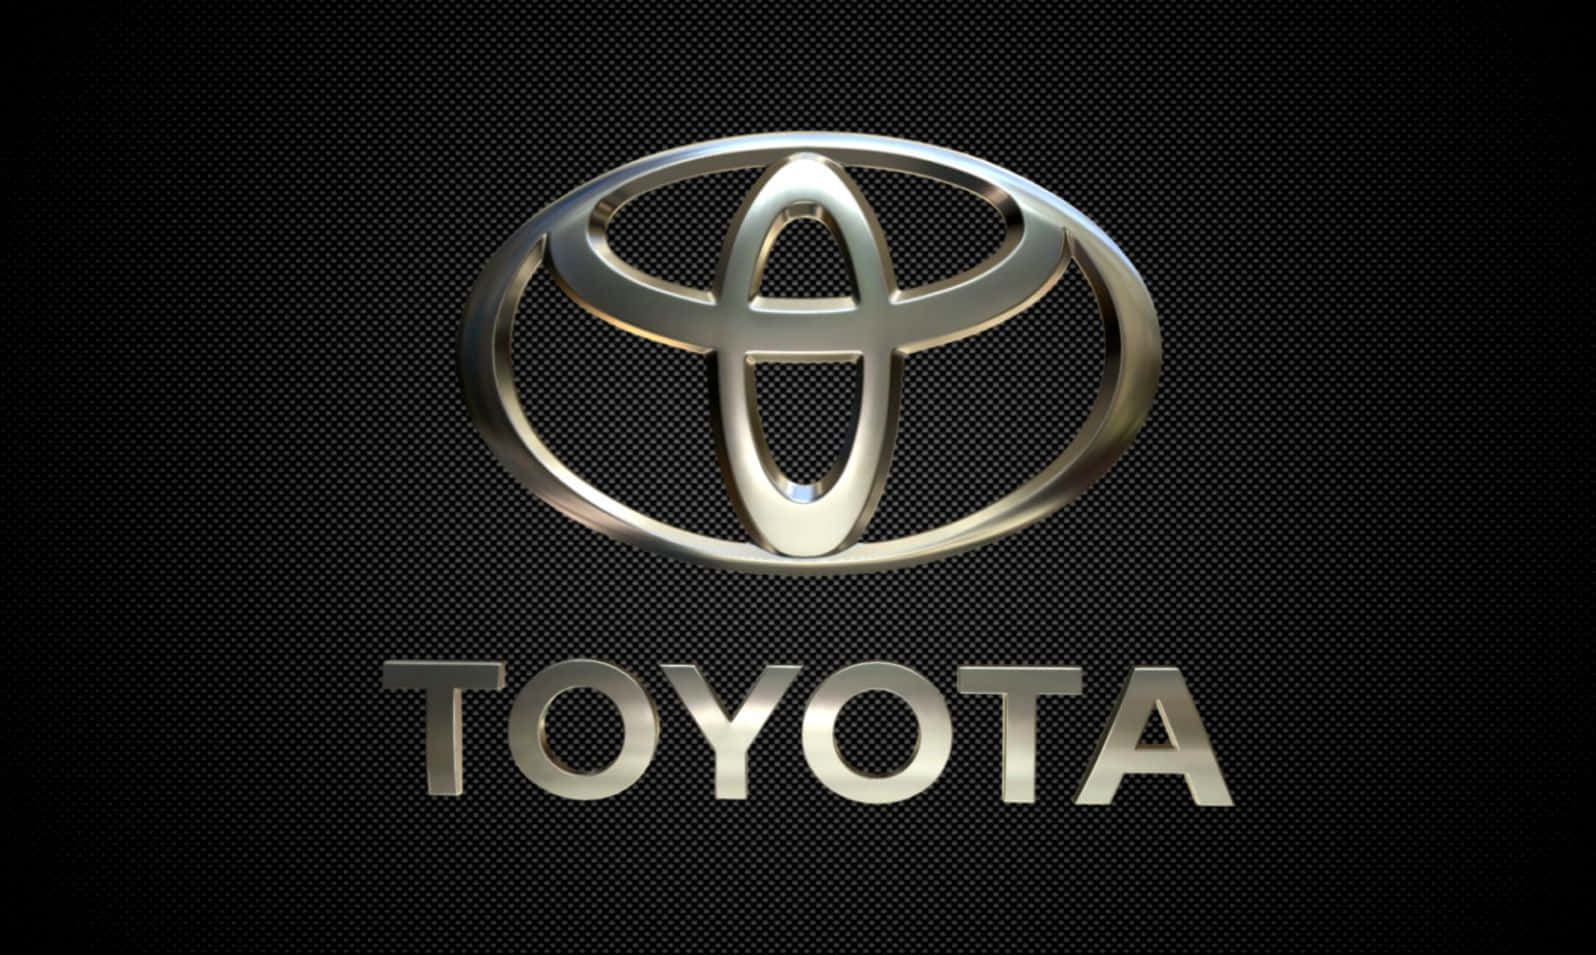 Toyotalogotyp Bakgrundsbilder I Hd-kvalitet.